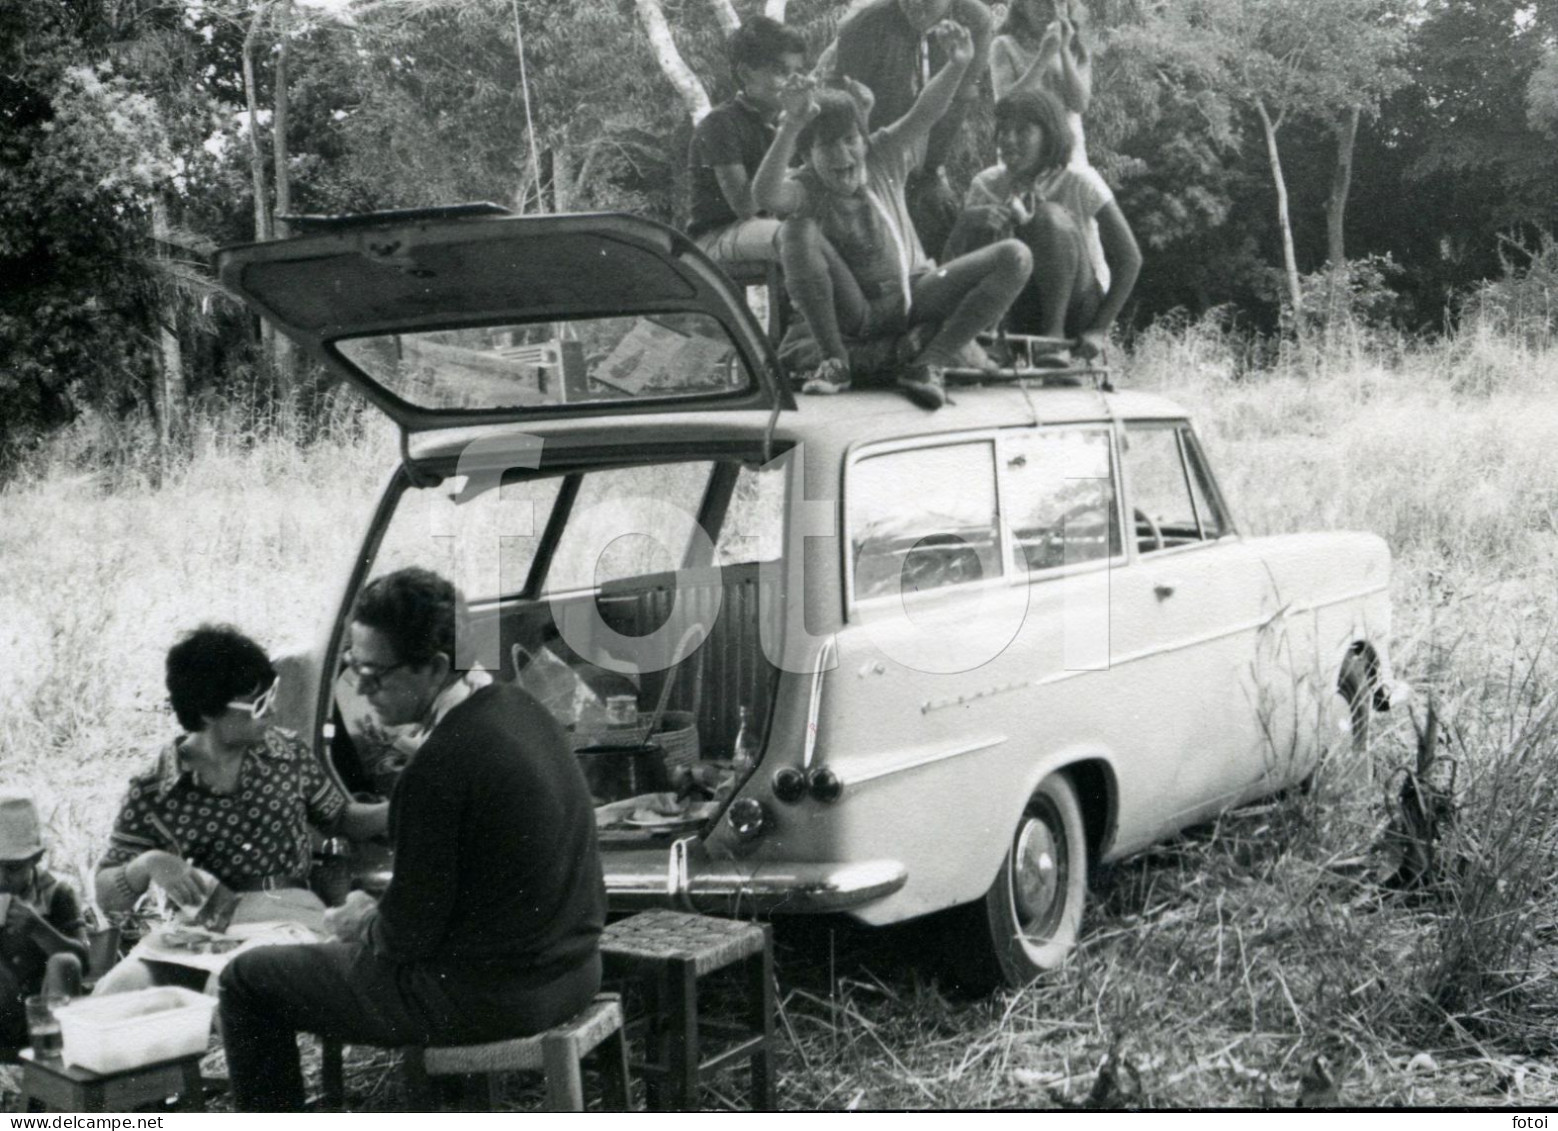 60s ORIGINAL AMATEUR PHOTO FOTO P2 OPEL REKORD CARAVAN OLDTIMER PICNIC MOZAMBIQUE MOÇAMBIQUE AFRICA  AFRIQUE AT112 - Automobile